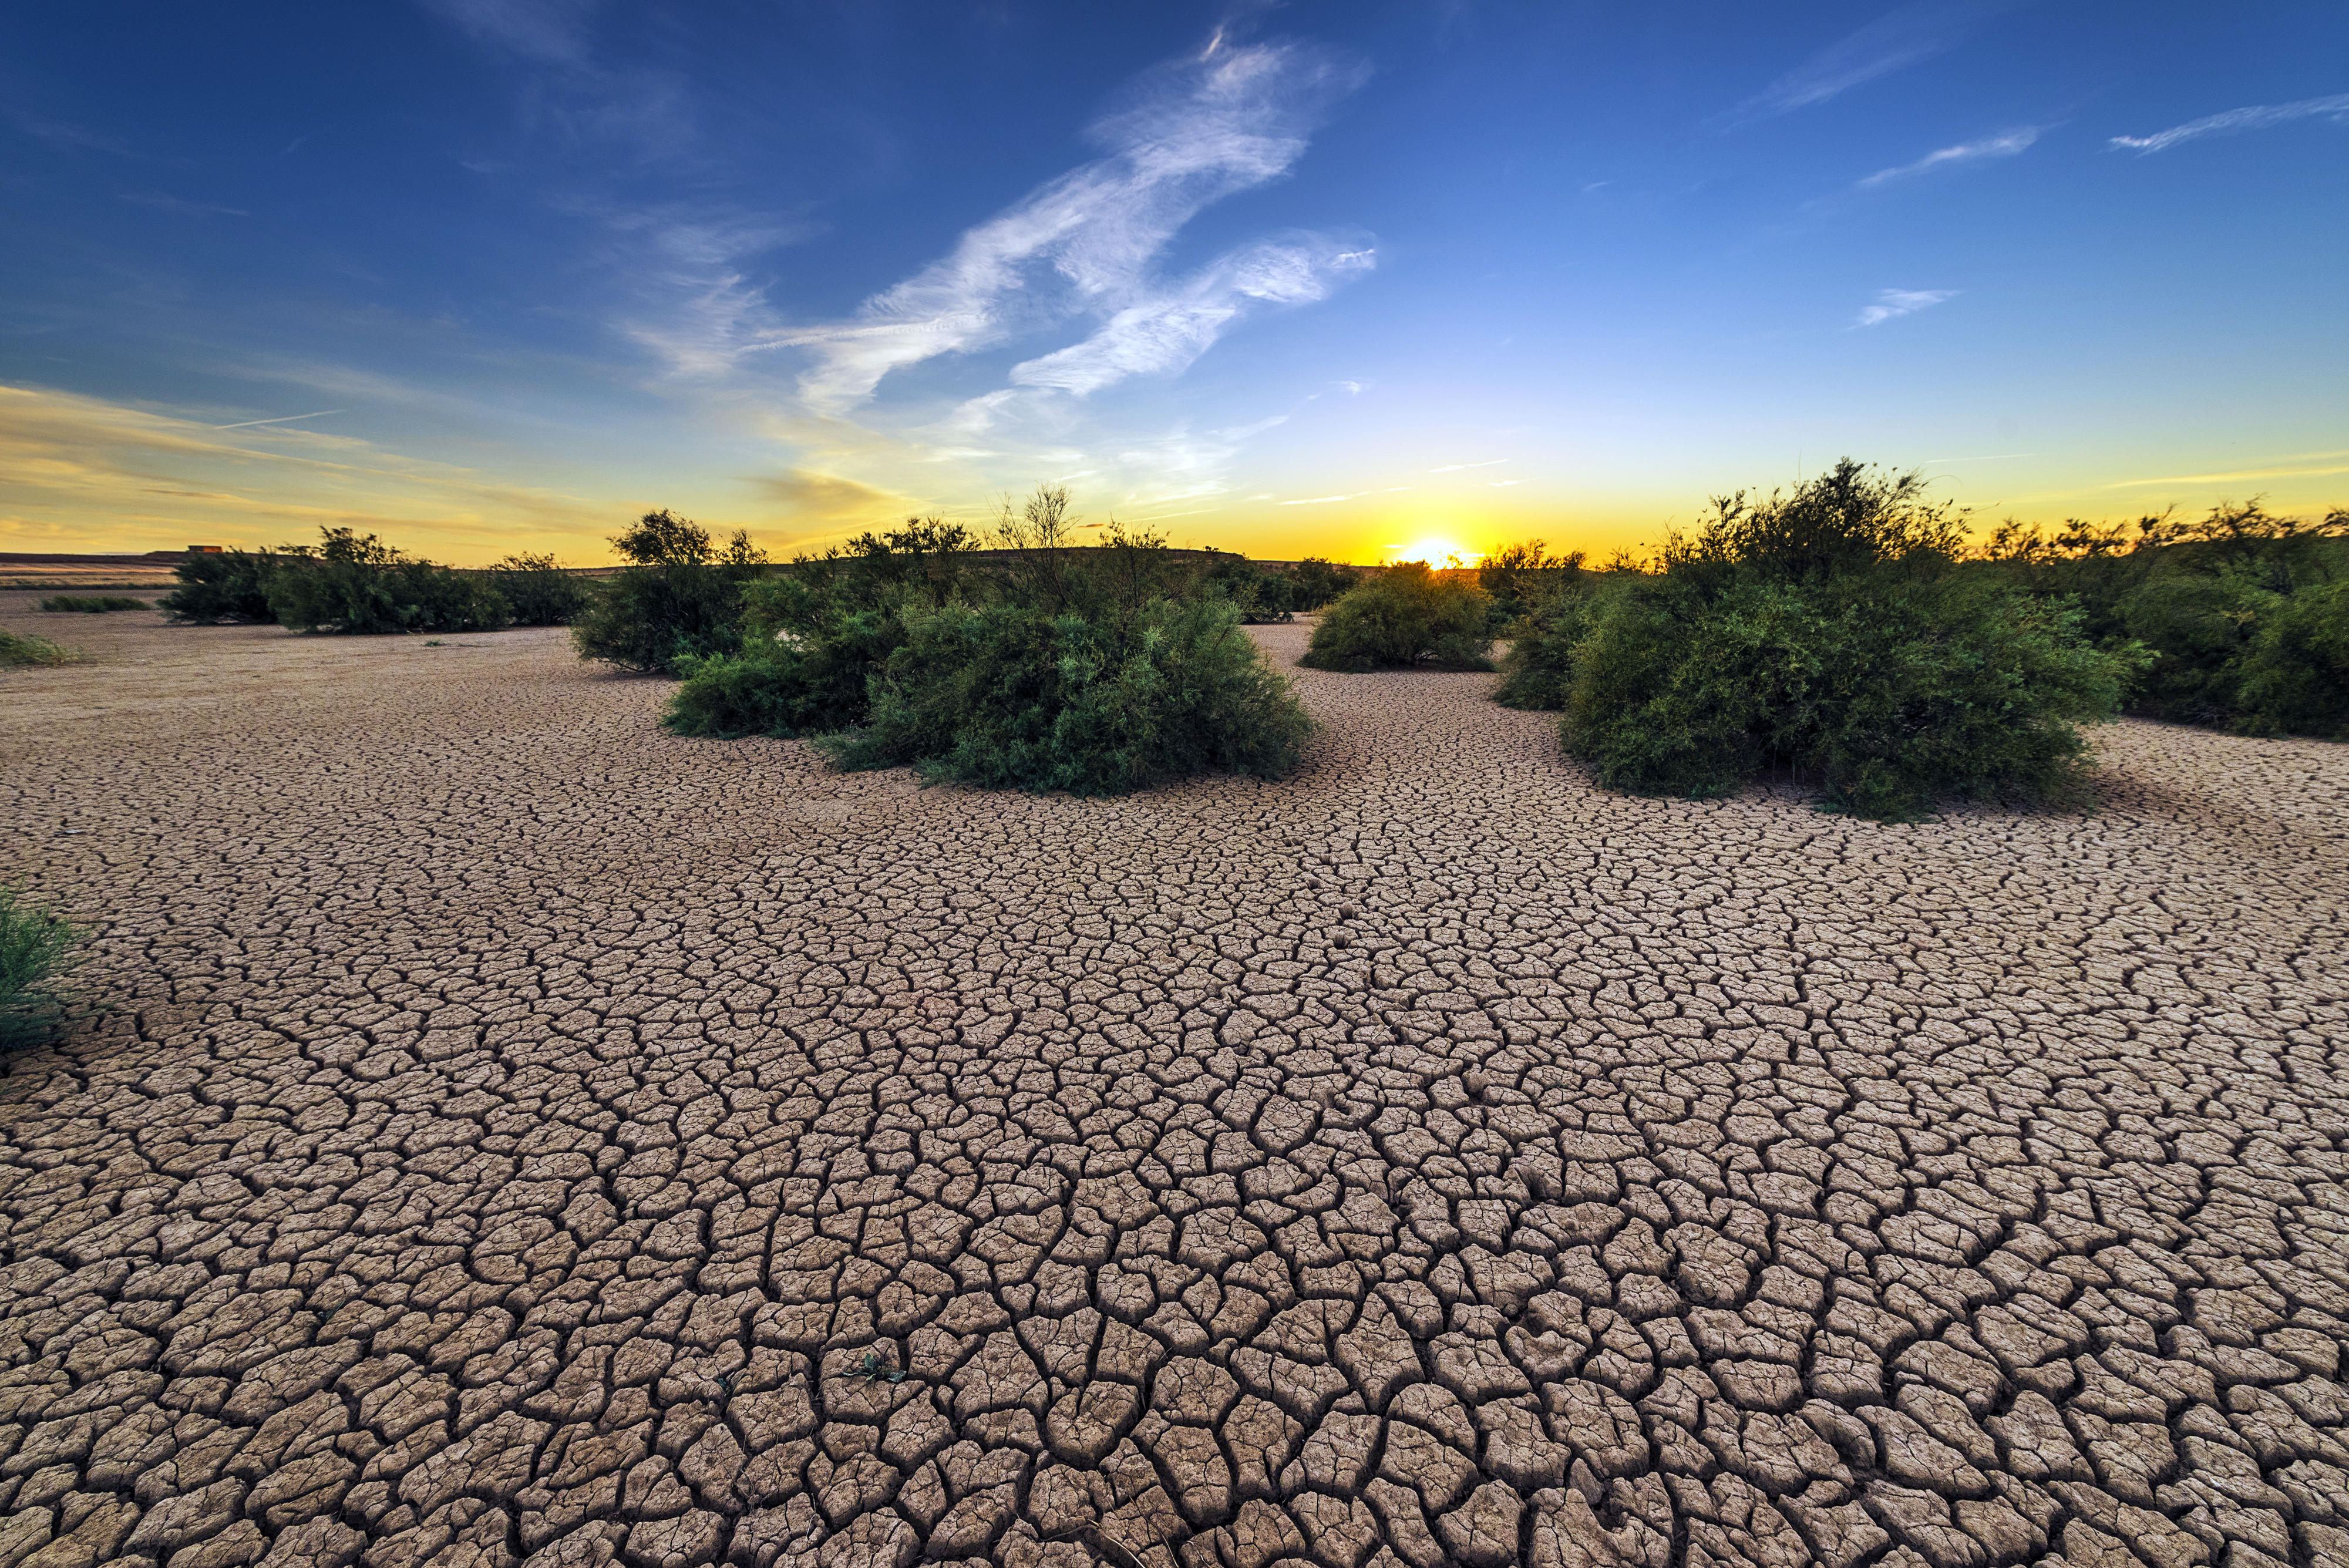 Wasserknappheit und Dürre gehören zu den schwerwiegenden Folgen des Klimawandels.